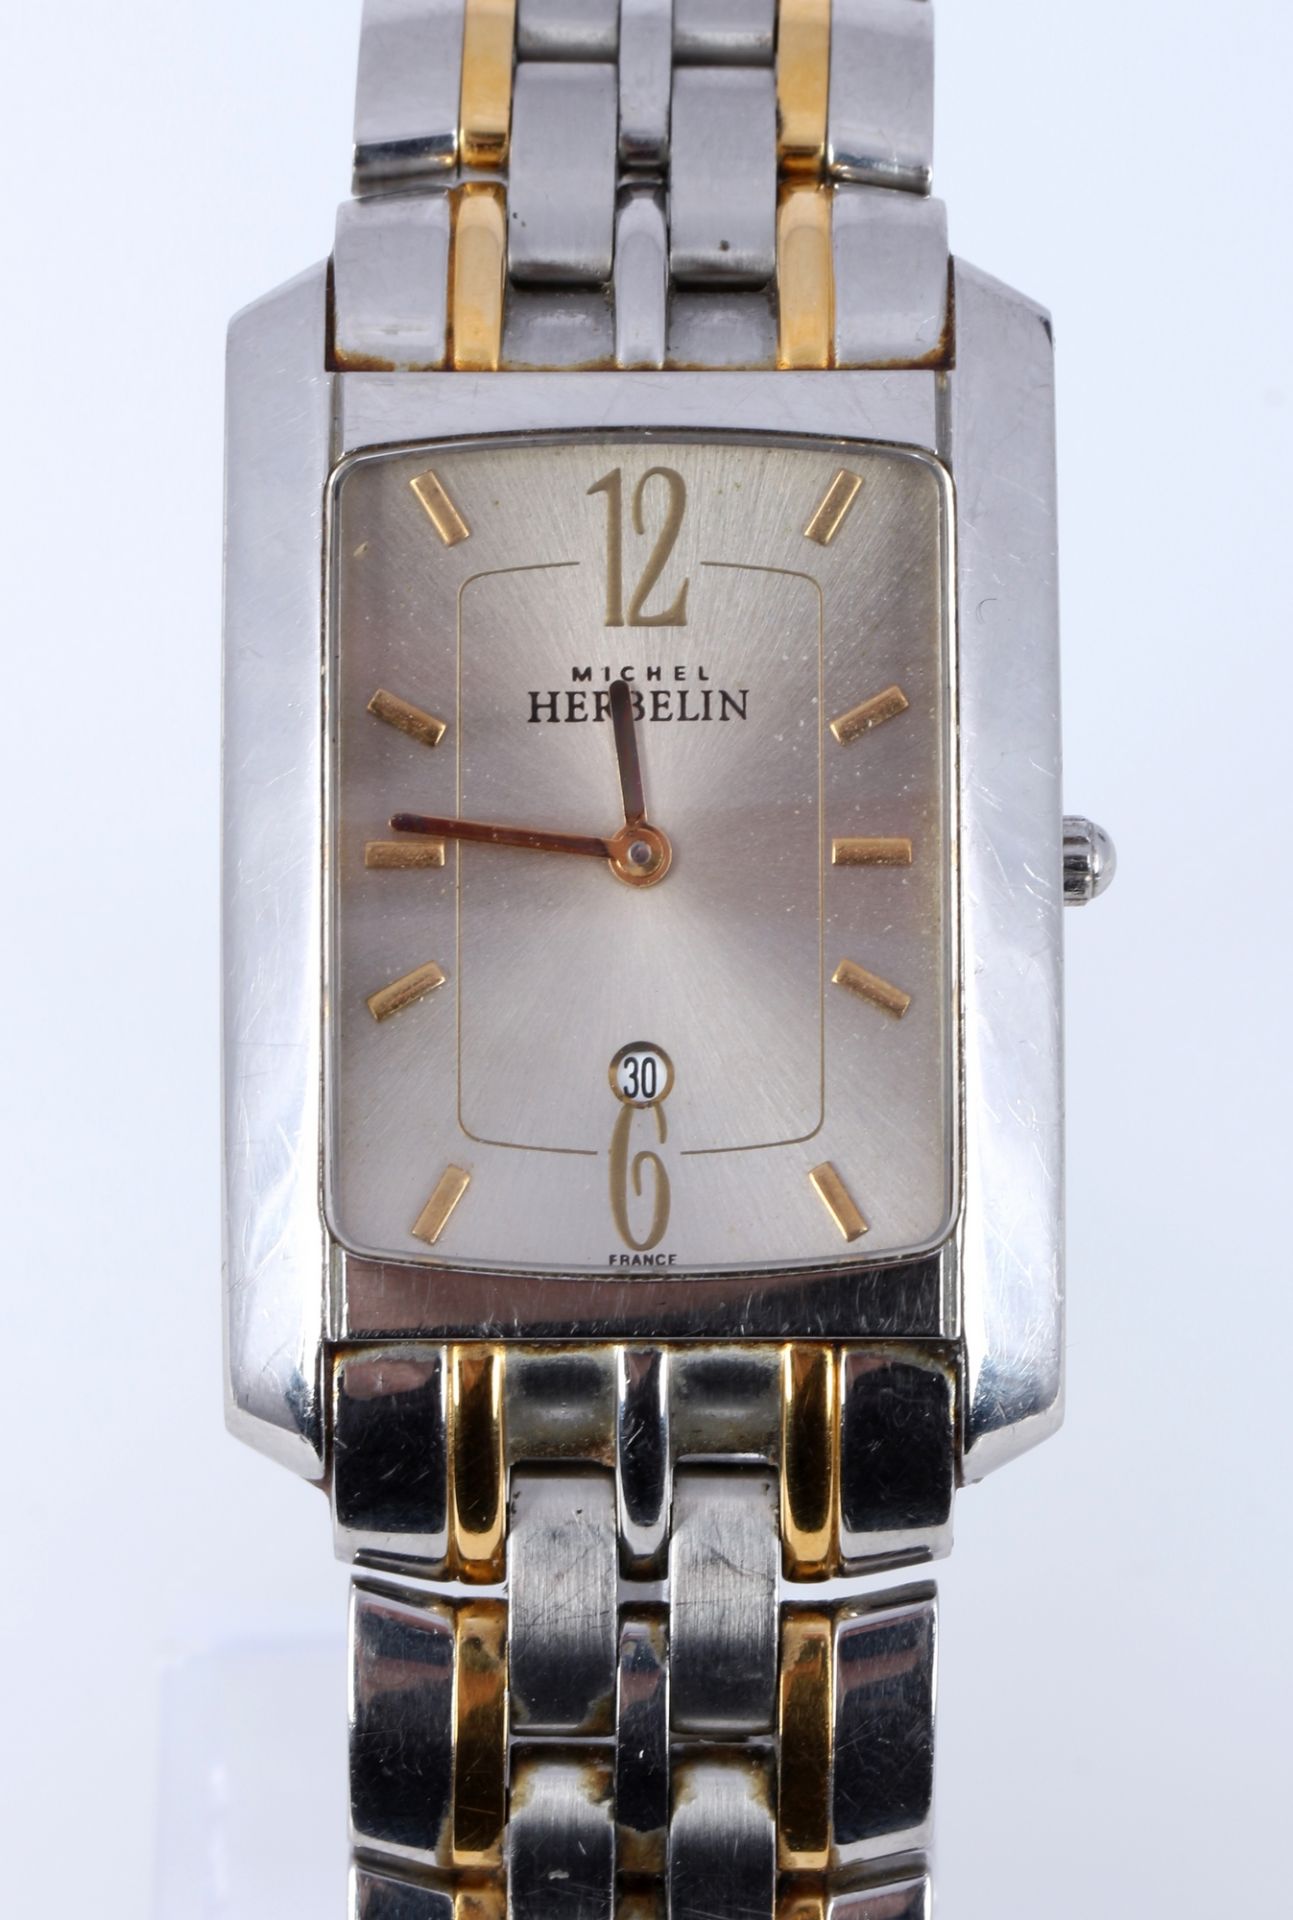 Michel Herbelin Paris Herren Armbanduhr, men's wristwatch, - Bild 2 aus 7